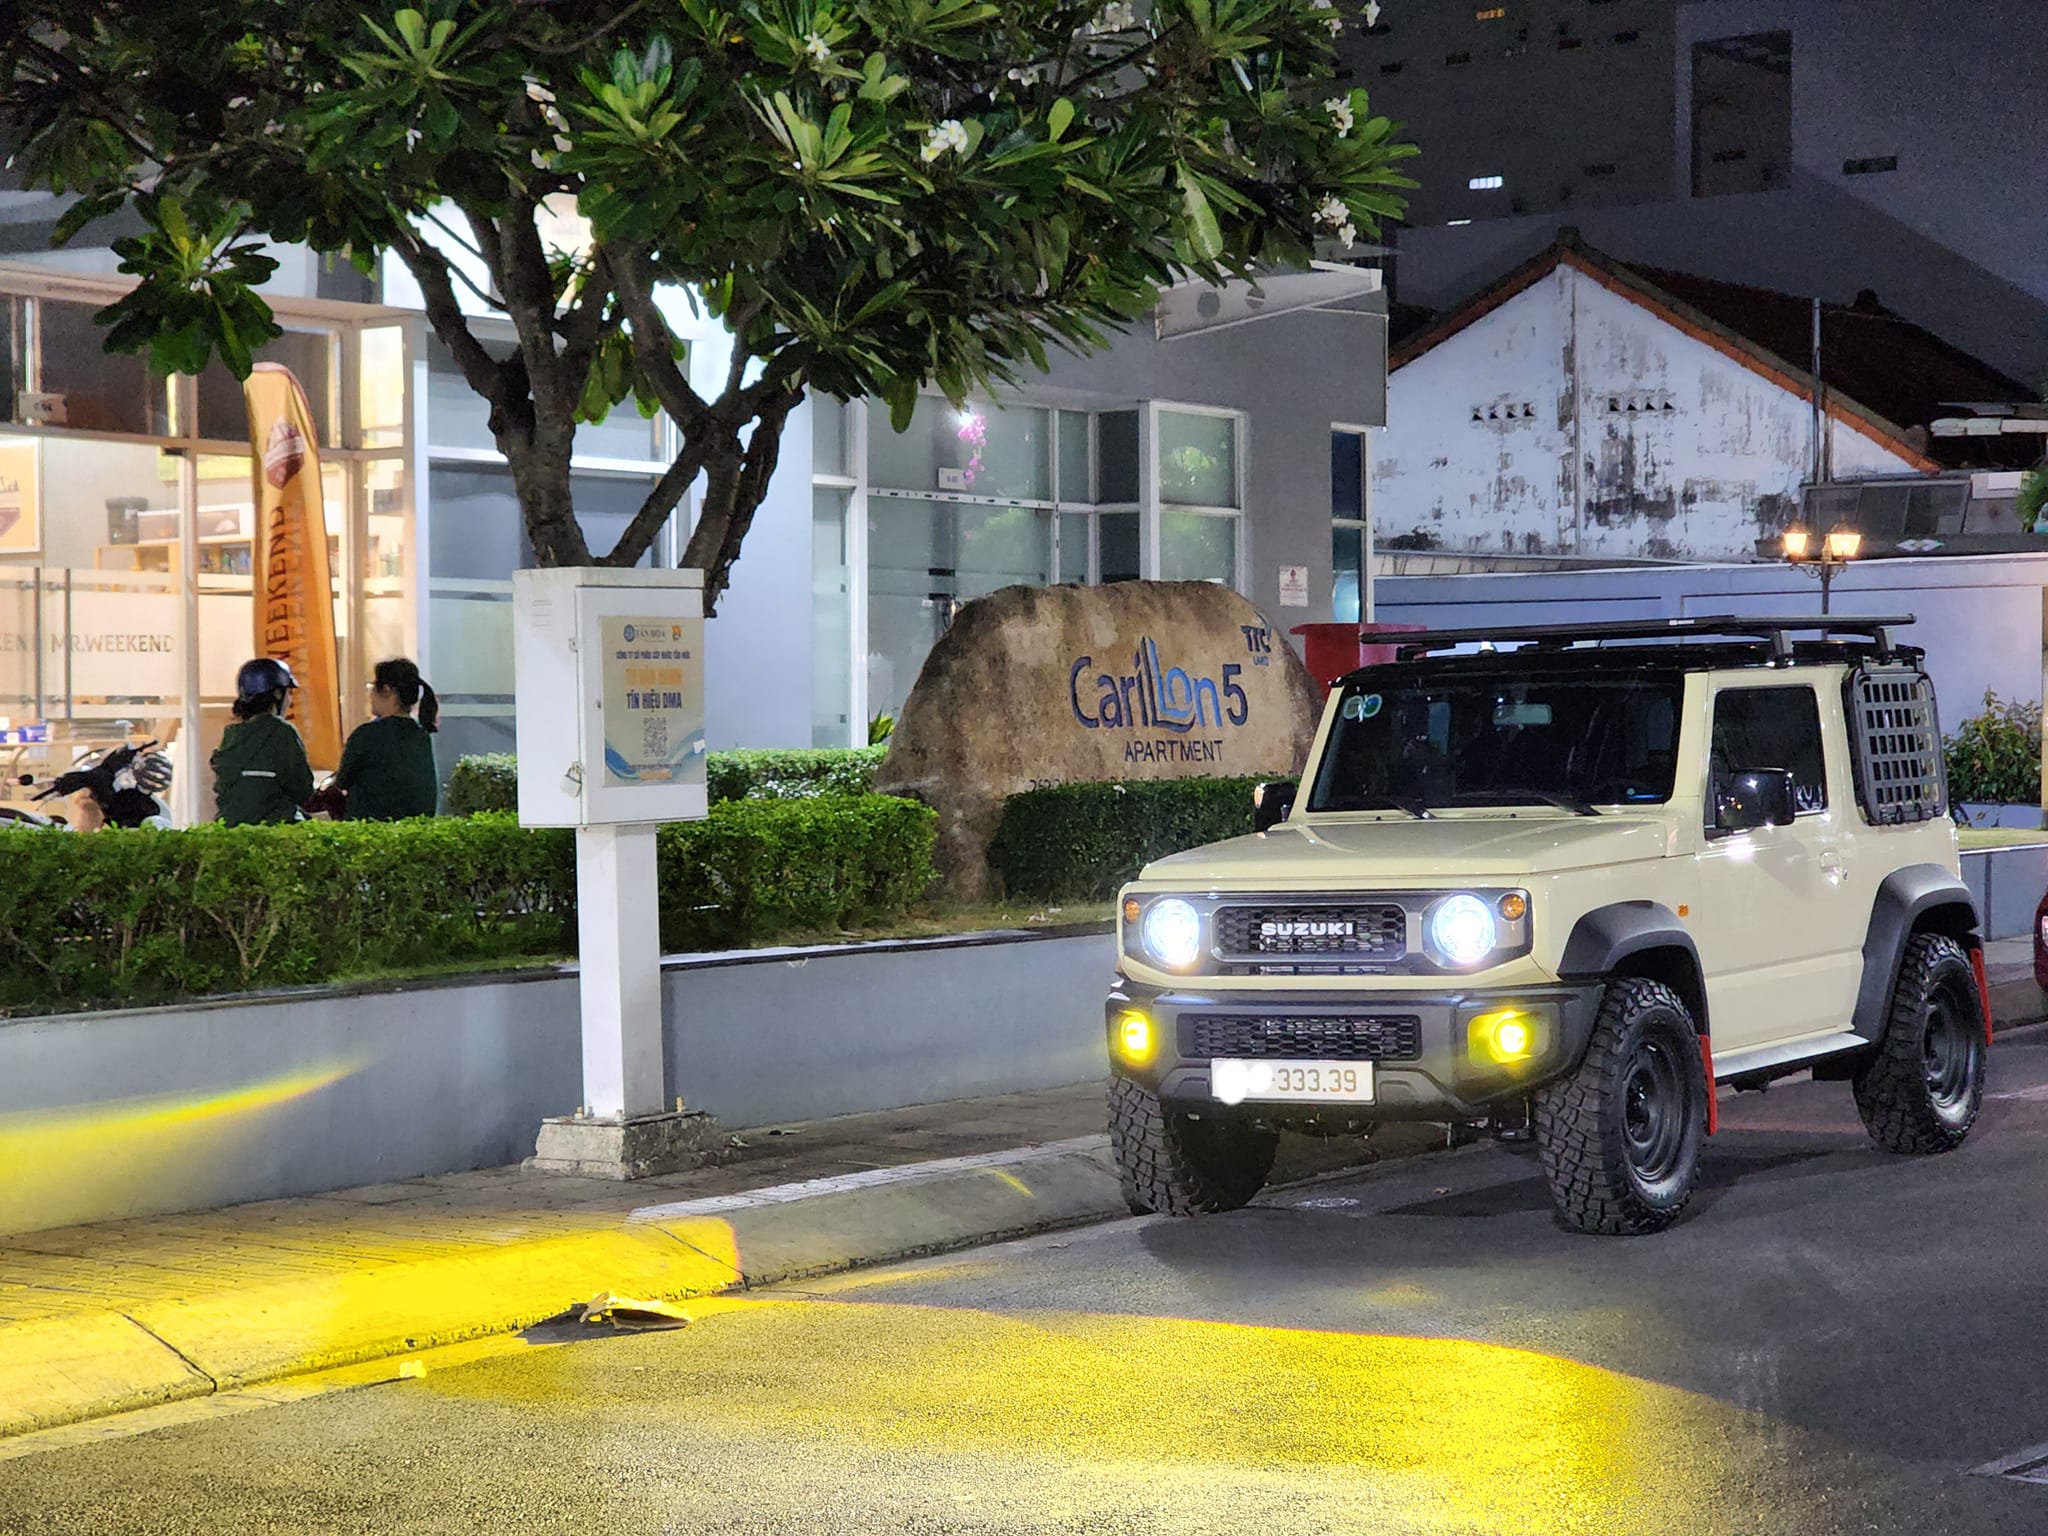 Hệ thống chiếu sáng nguyên bản không đáp ứng được nhu cầu của chủ xe nên chiếc Suzuki Jimny này nâng cấp thêm khả năng chiếu sáng khi đèn LED nguyên bản của xe thay thế bằng đèn Bi-LED laser phát ánh sáng mạnh hơn, ngoài ra xe còn gắn thêm một cặp đèn Bi-LED sương mù màu vàng rất hữu dụng khi di chuyển dưới trời mưa vào ban đêm.